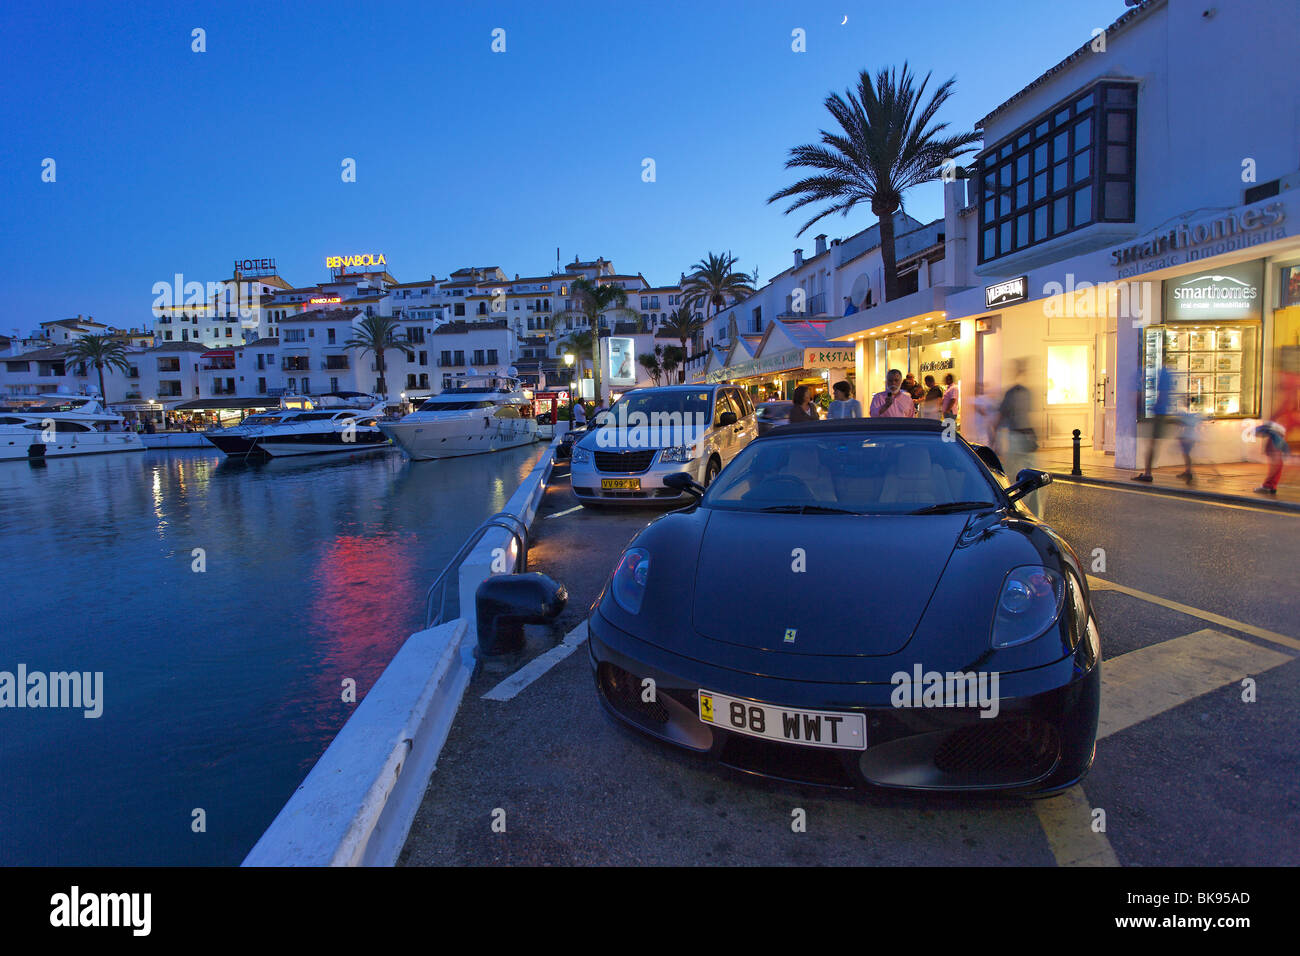 Los coches de lujo, restaurantes cerca del puerto, Puerto Banús, Marbella,  Málaga, Andalucía Fotografía de stock - Alamy